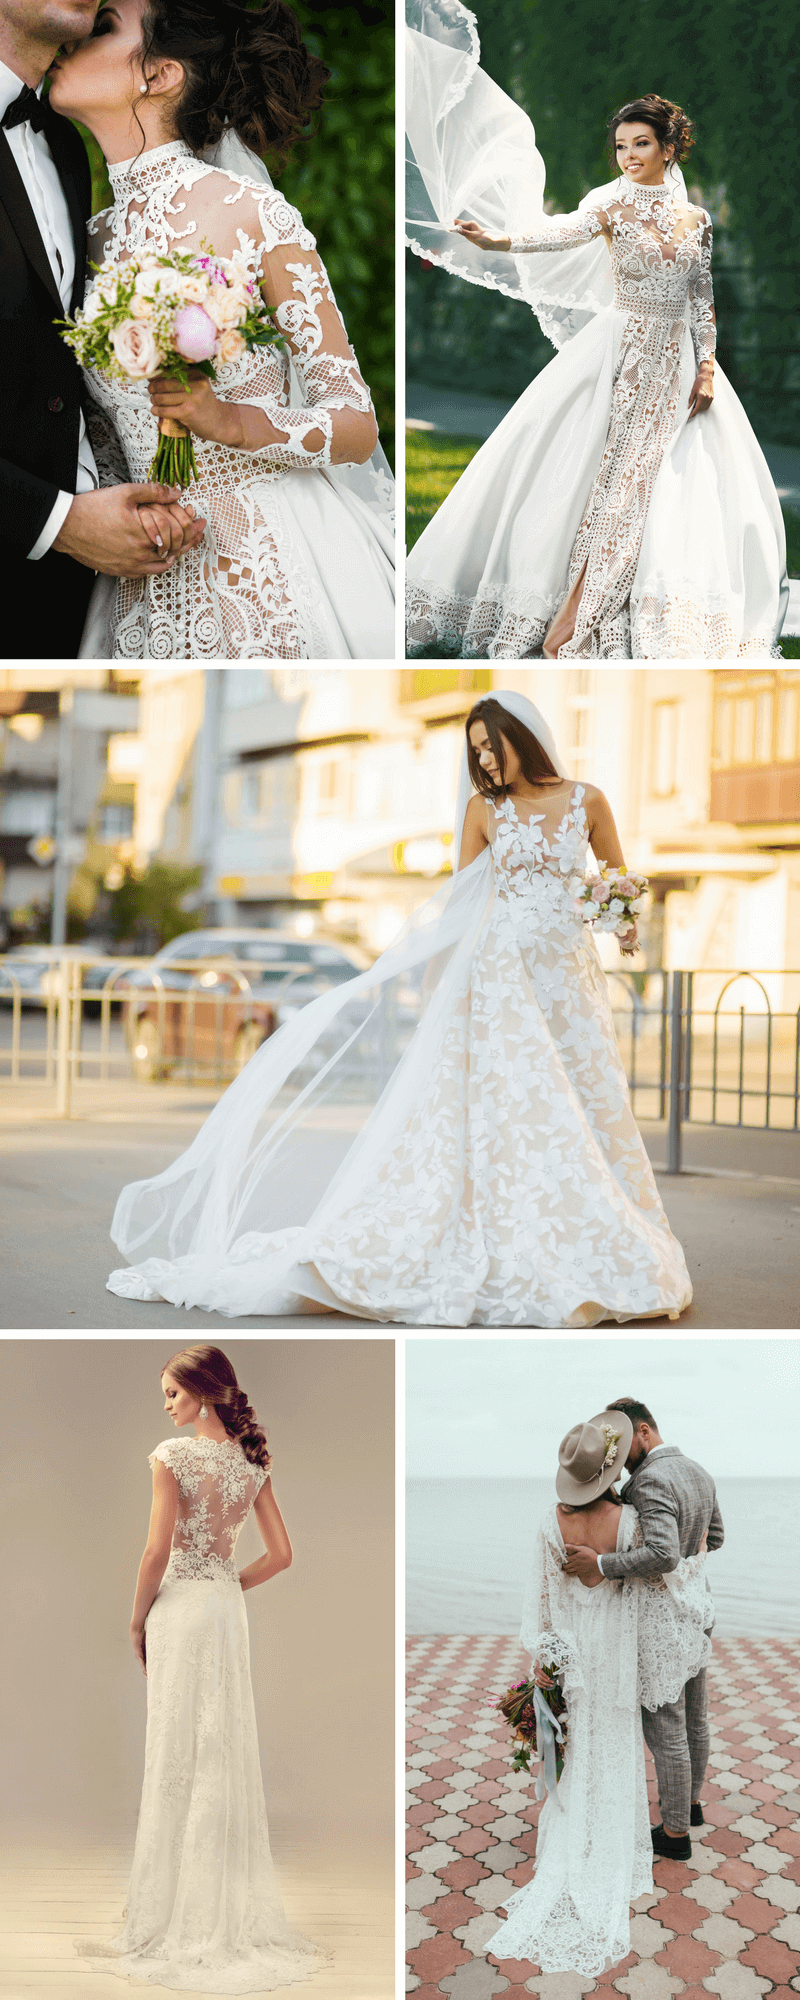 Brautkleider Trends 18 Und 19 Hochzeitskiste